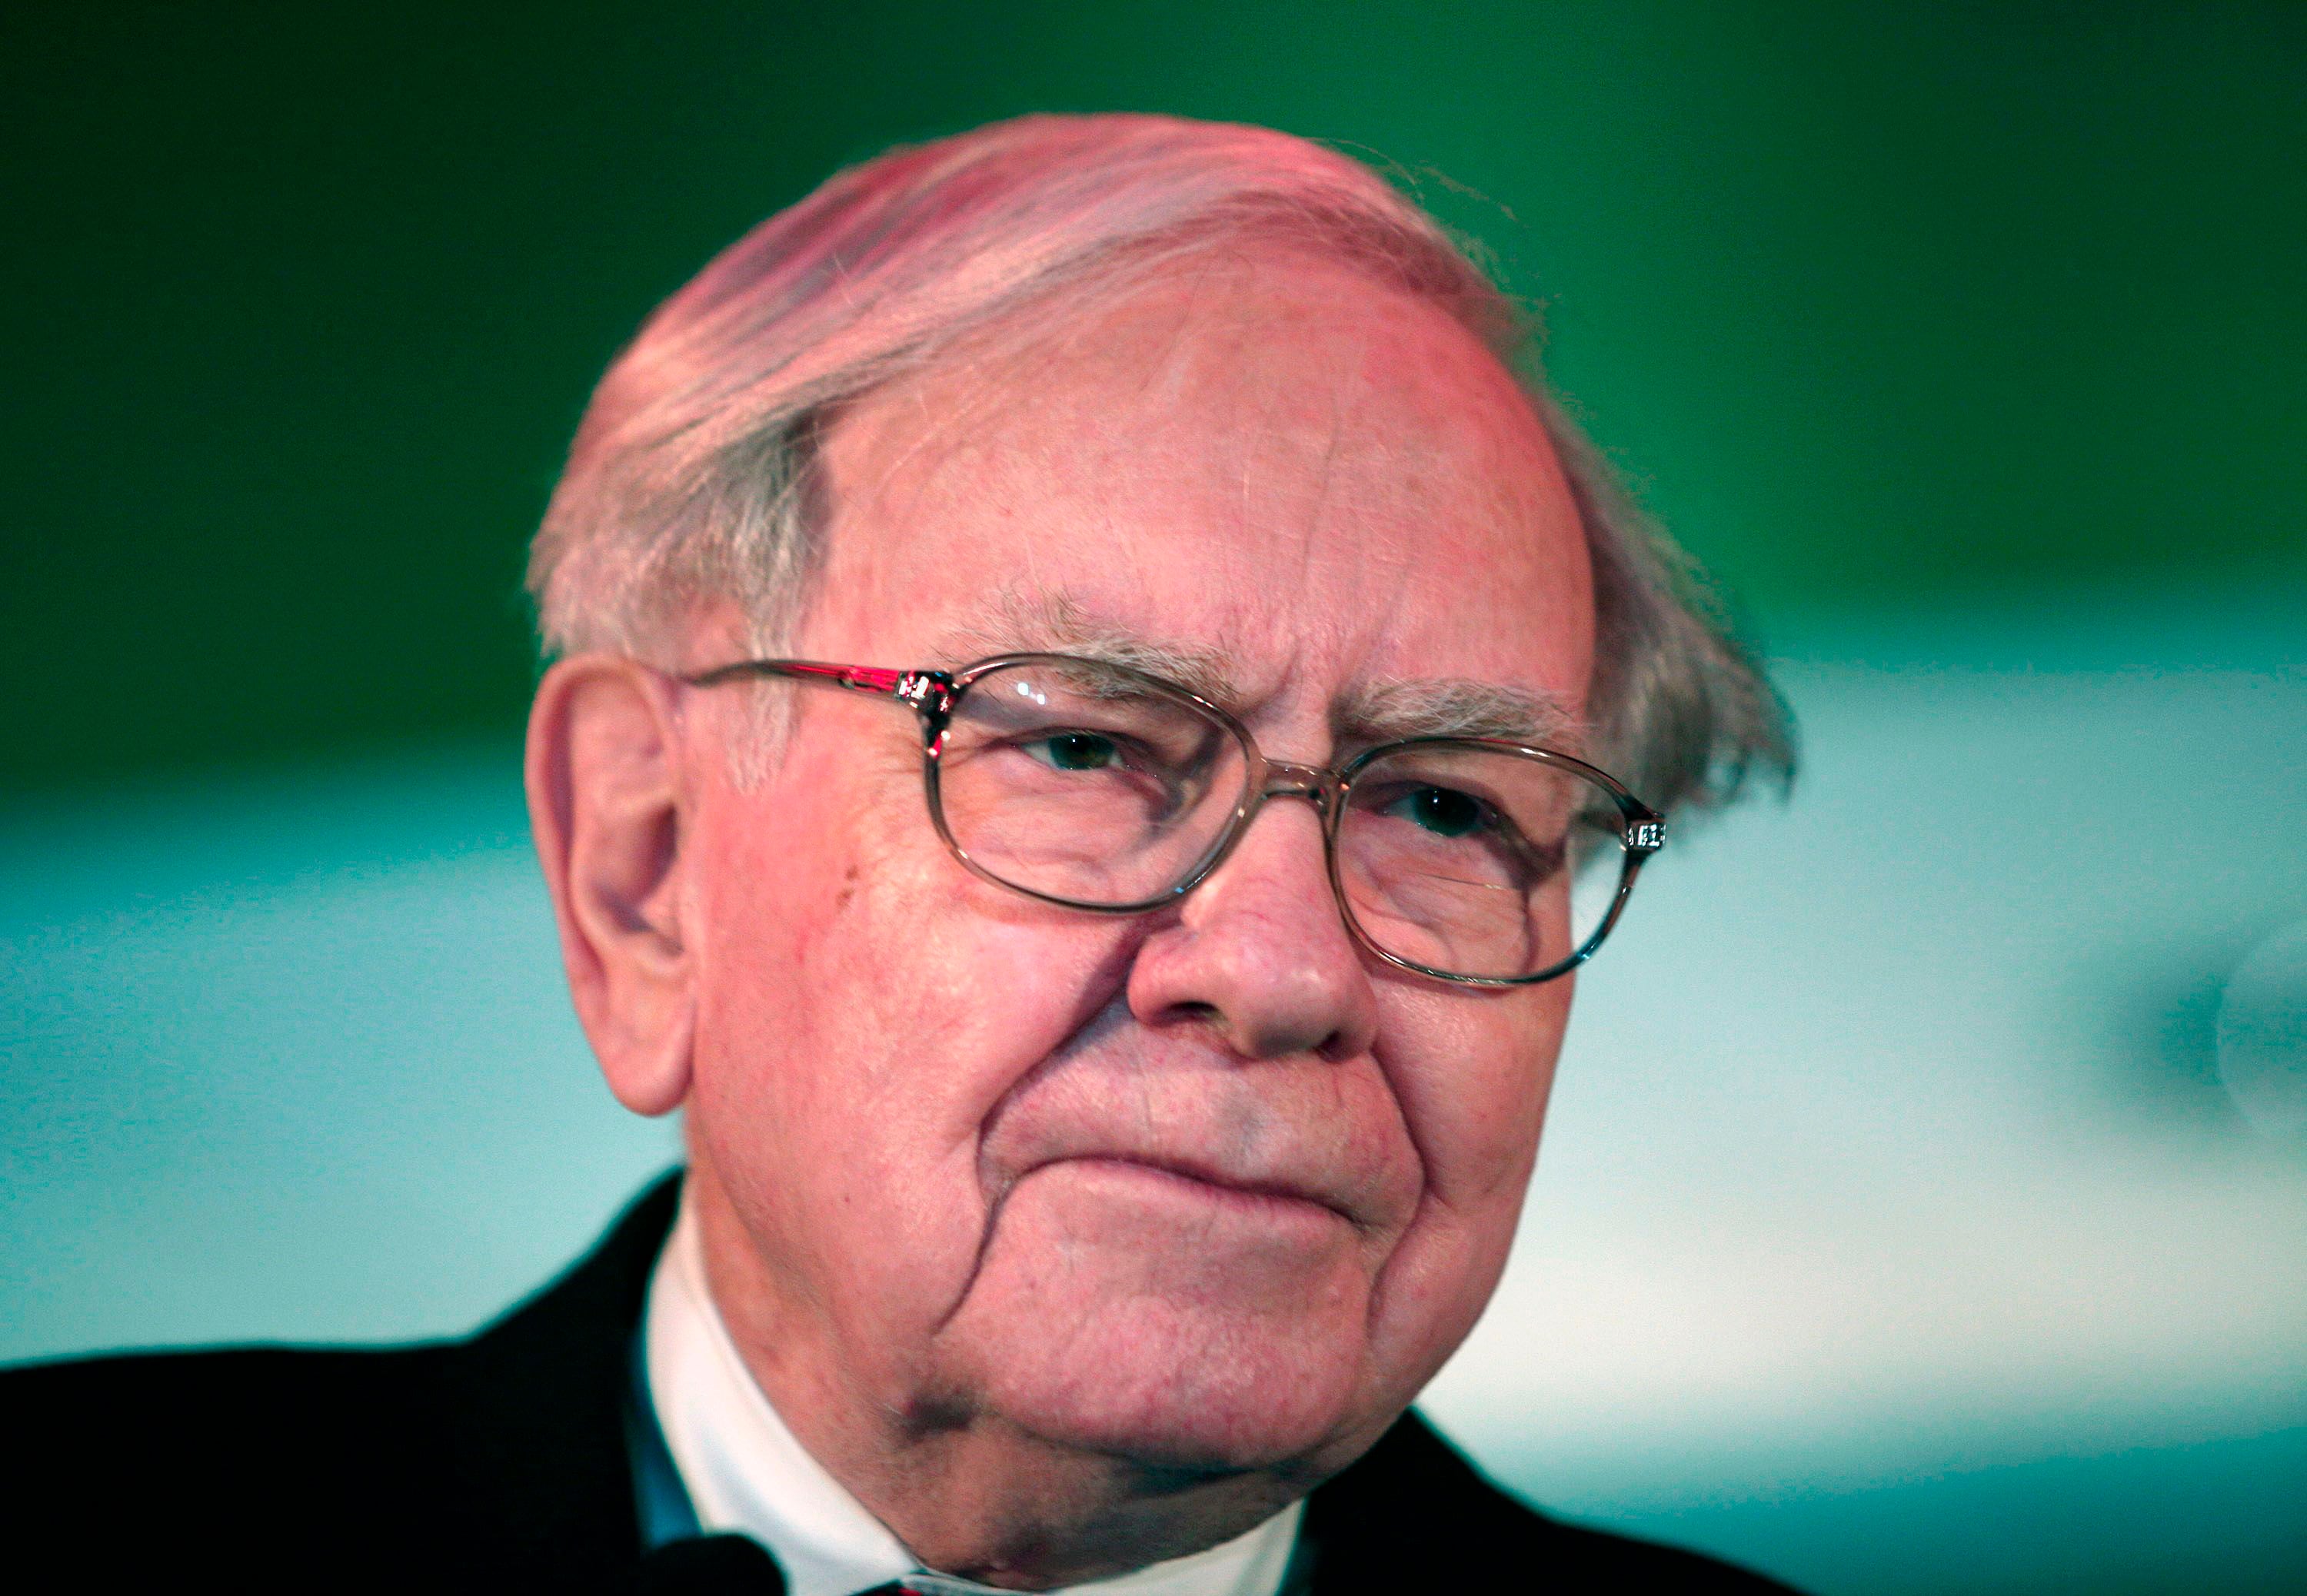 Warren Buffett prevé más quiebras bancarias en Estados Unidos, pero clientes estarán a salvo